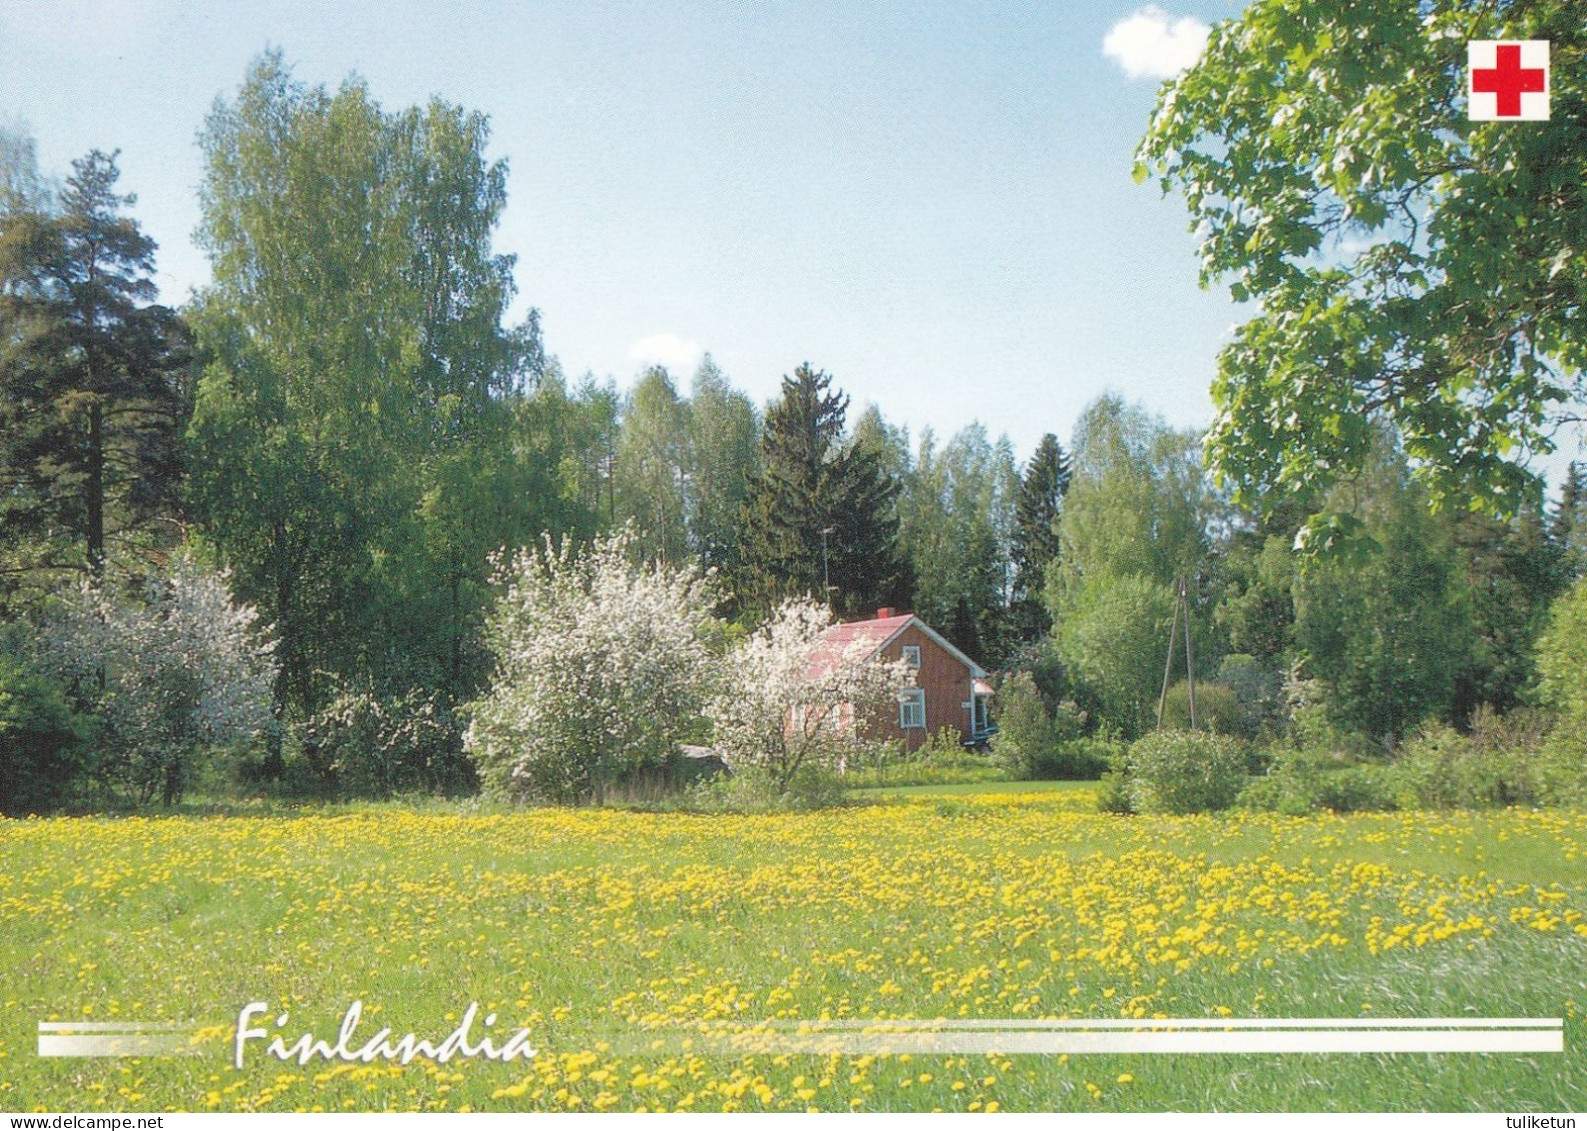 Postal Stationery - Summer Landscape - Scene - Red Cross 2002 - Finlandia - Suomi Finland - Postage Paid - Postwaardestukken